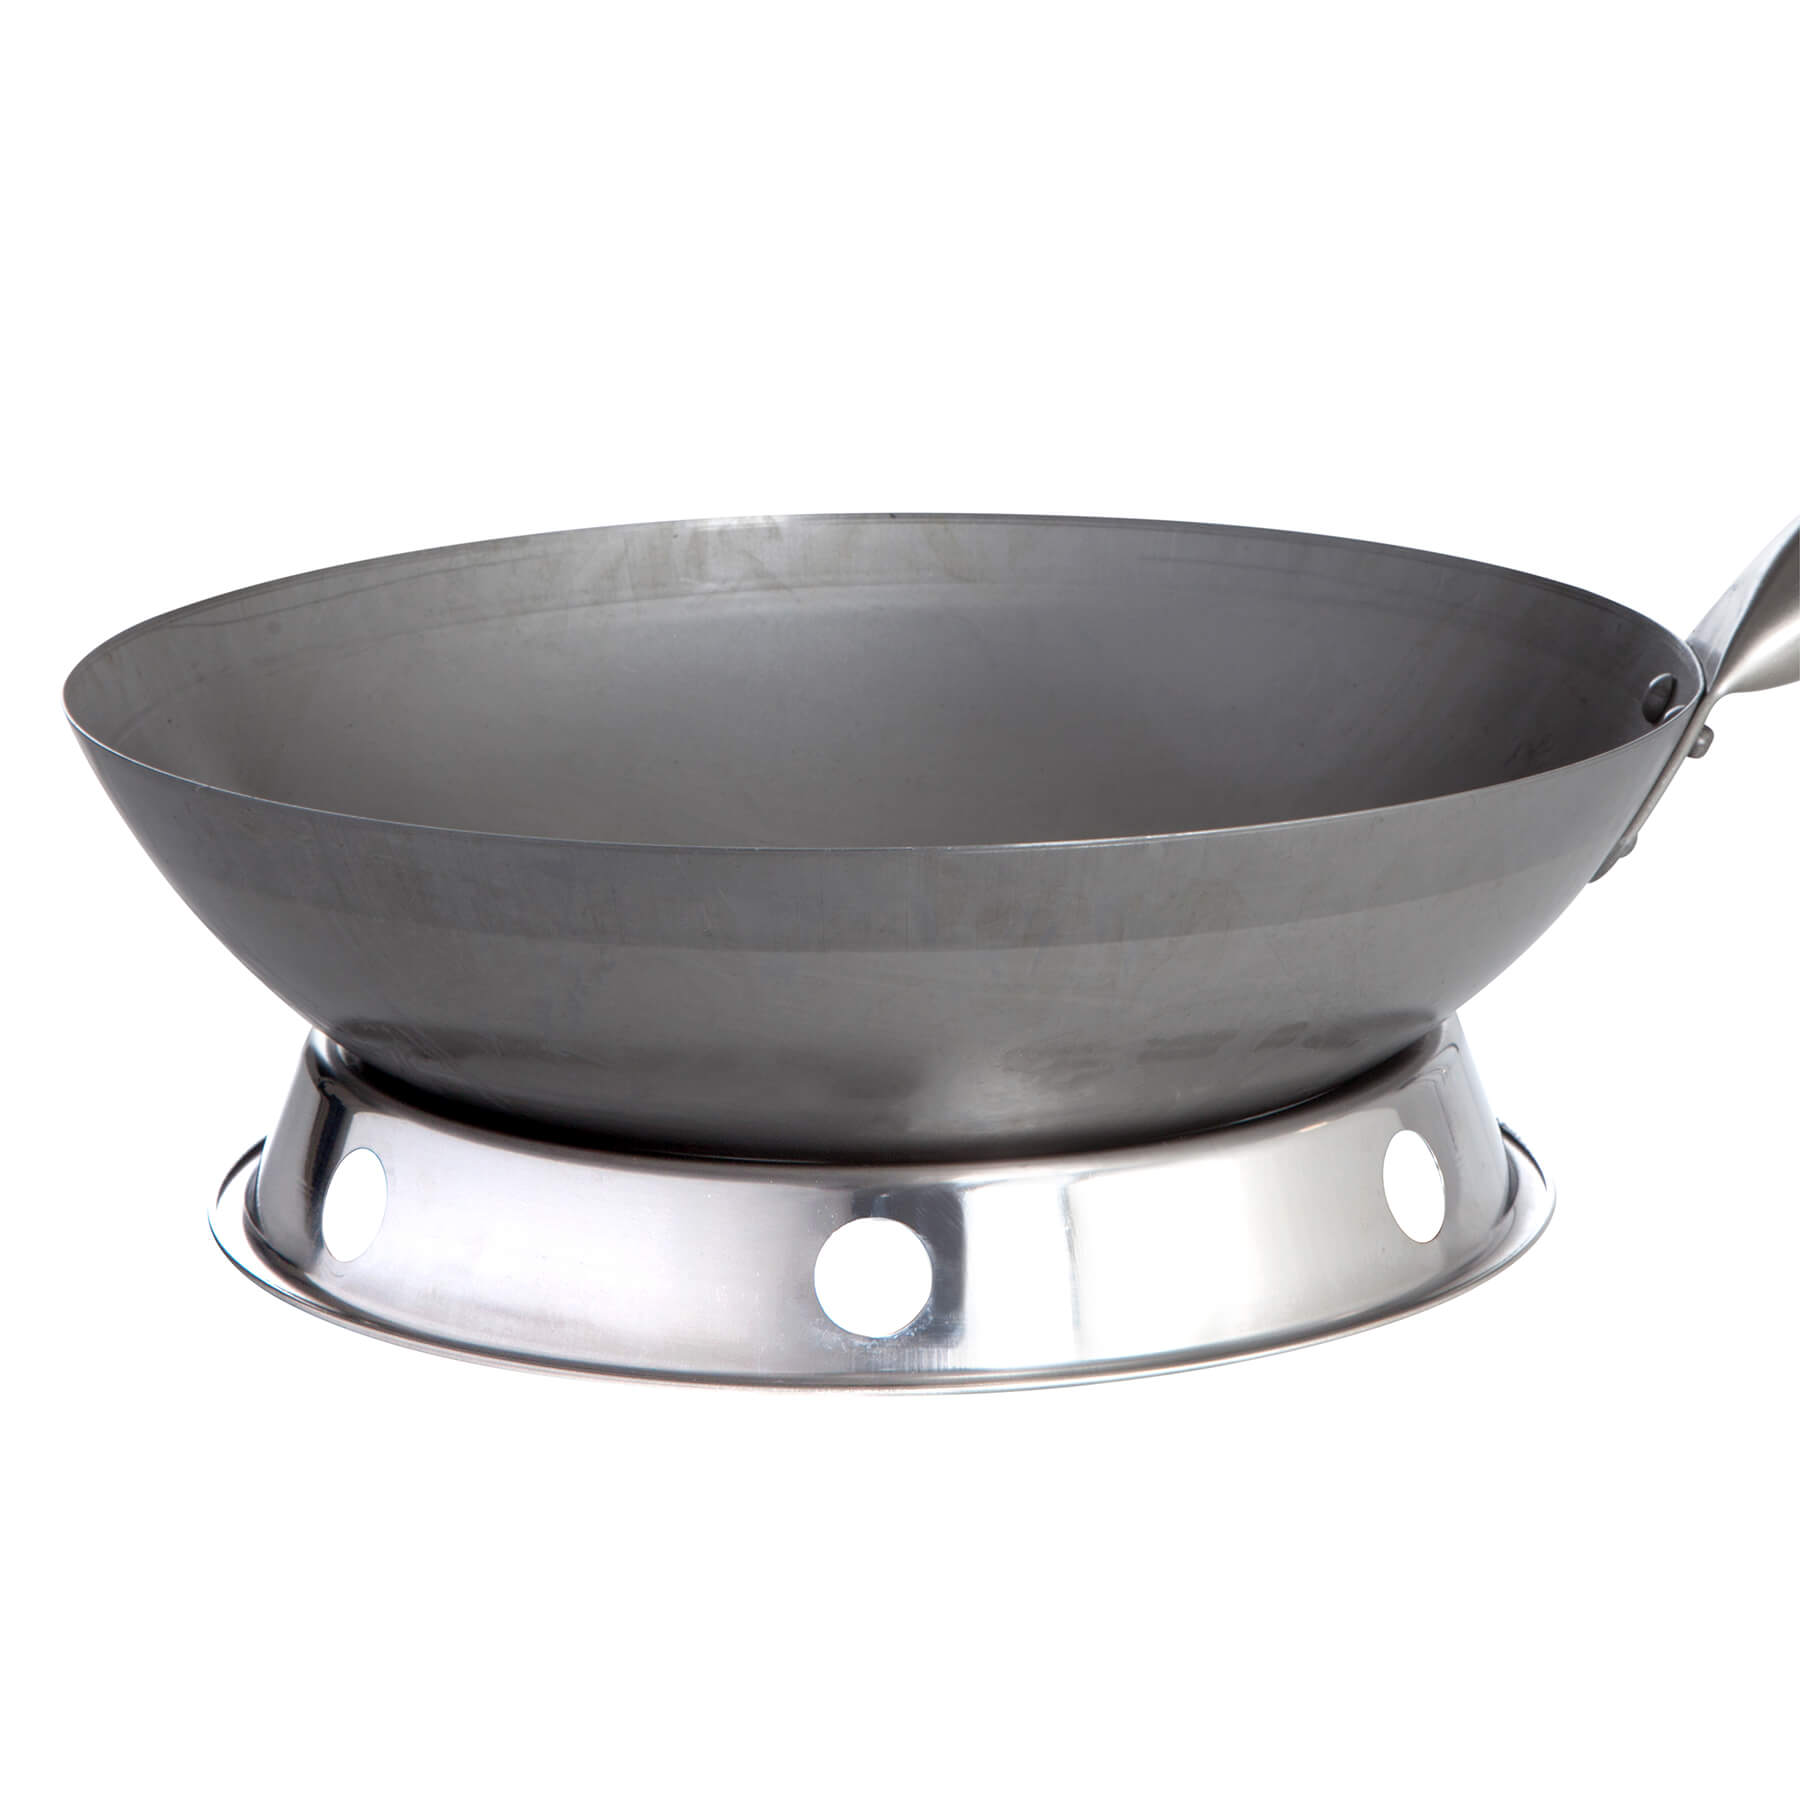 Padella wok cinese originale, Ø 33 cm e anello wok in acciaio inossidabile